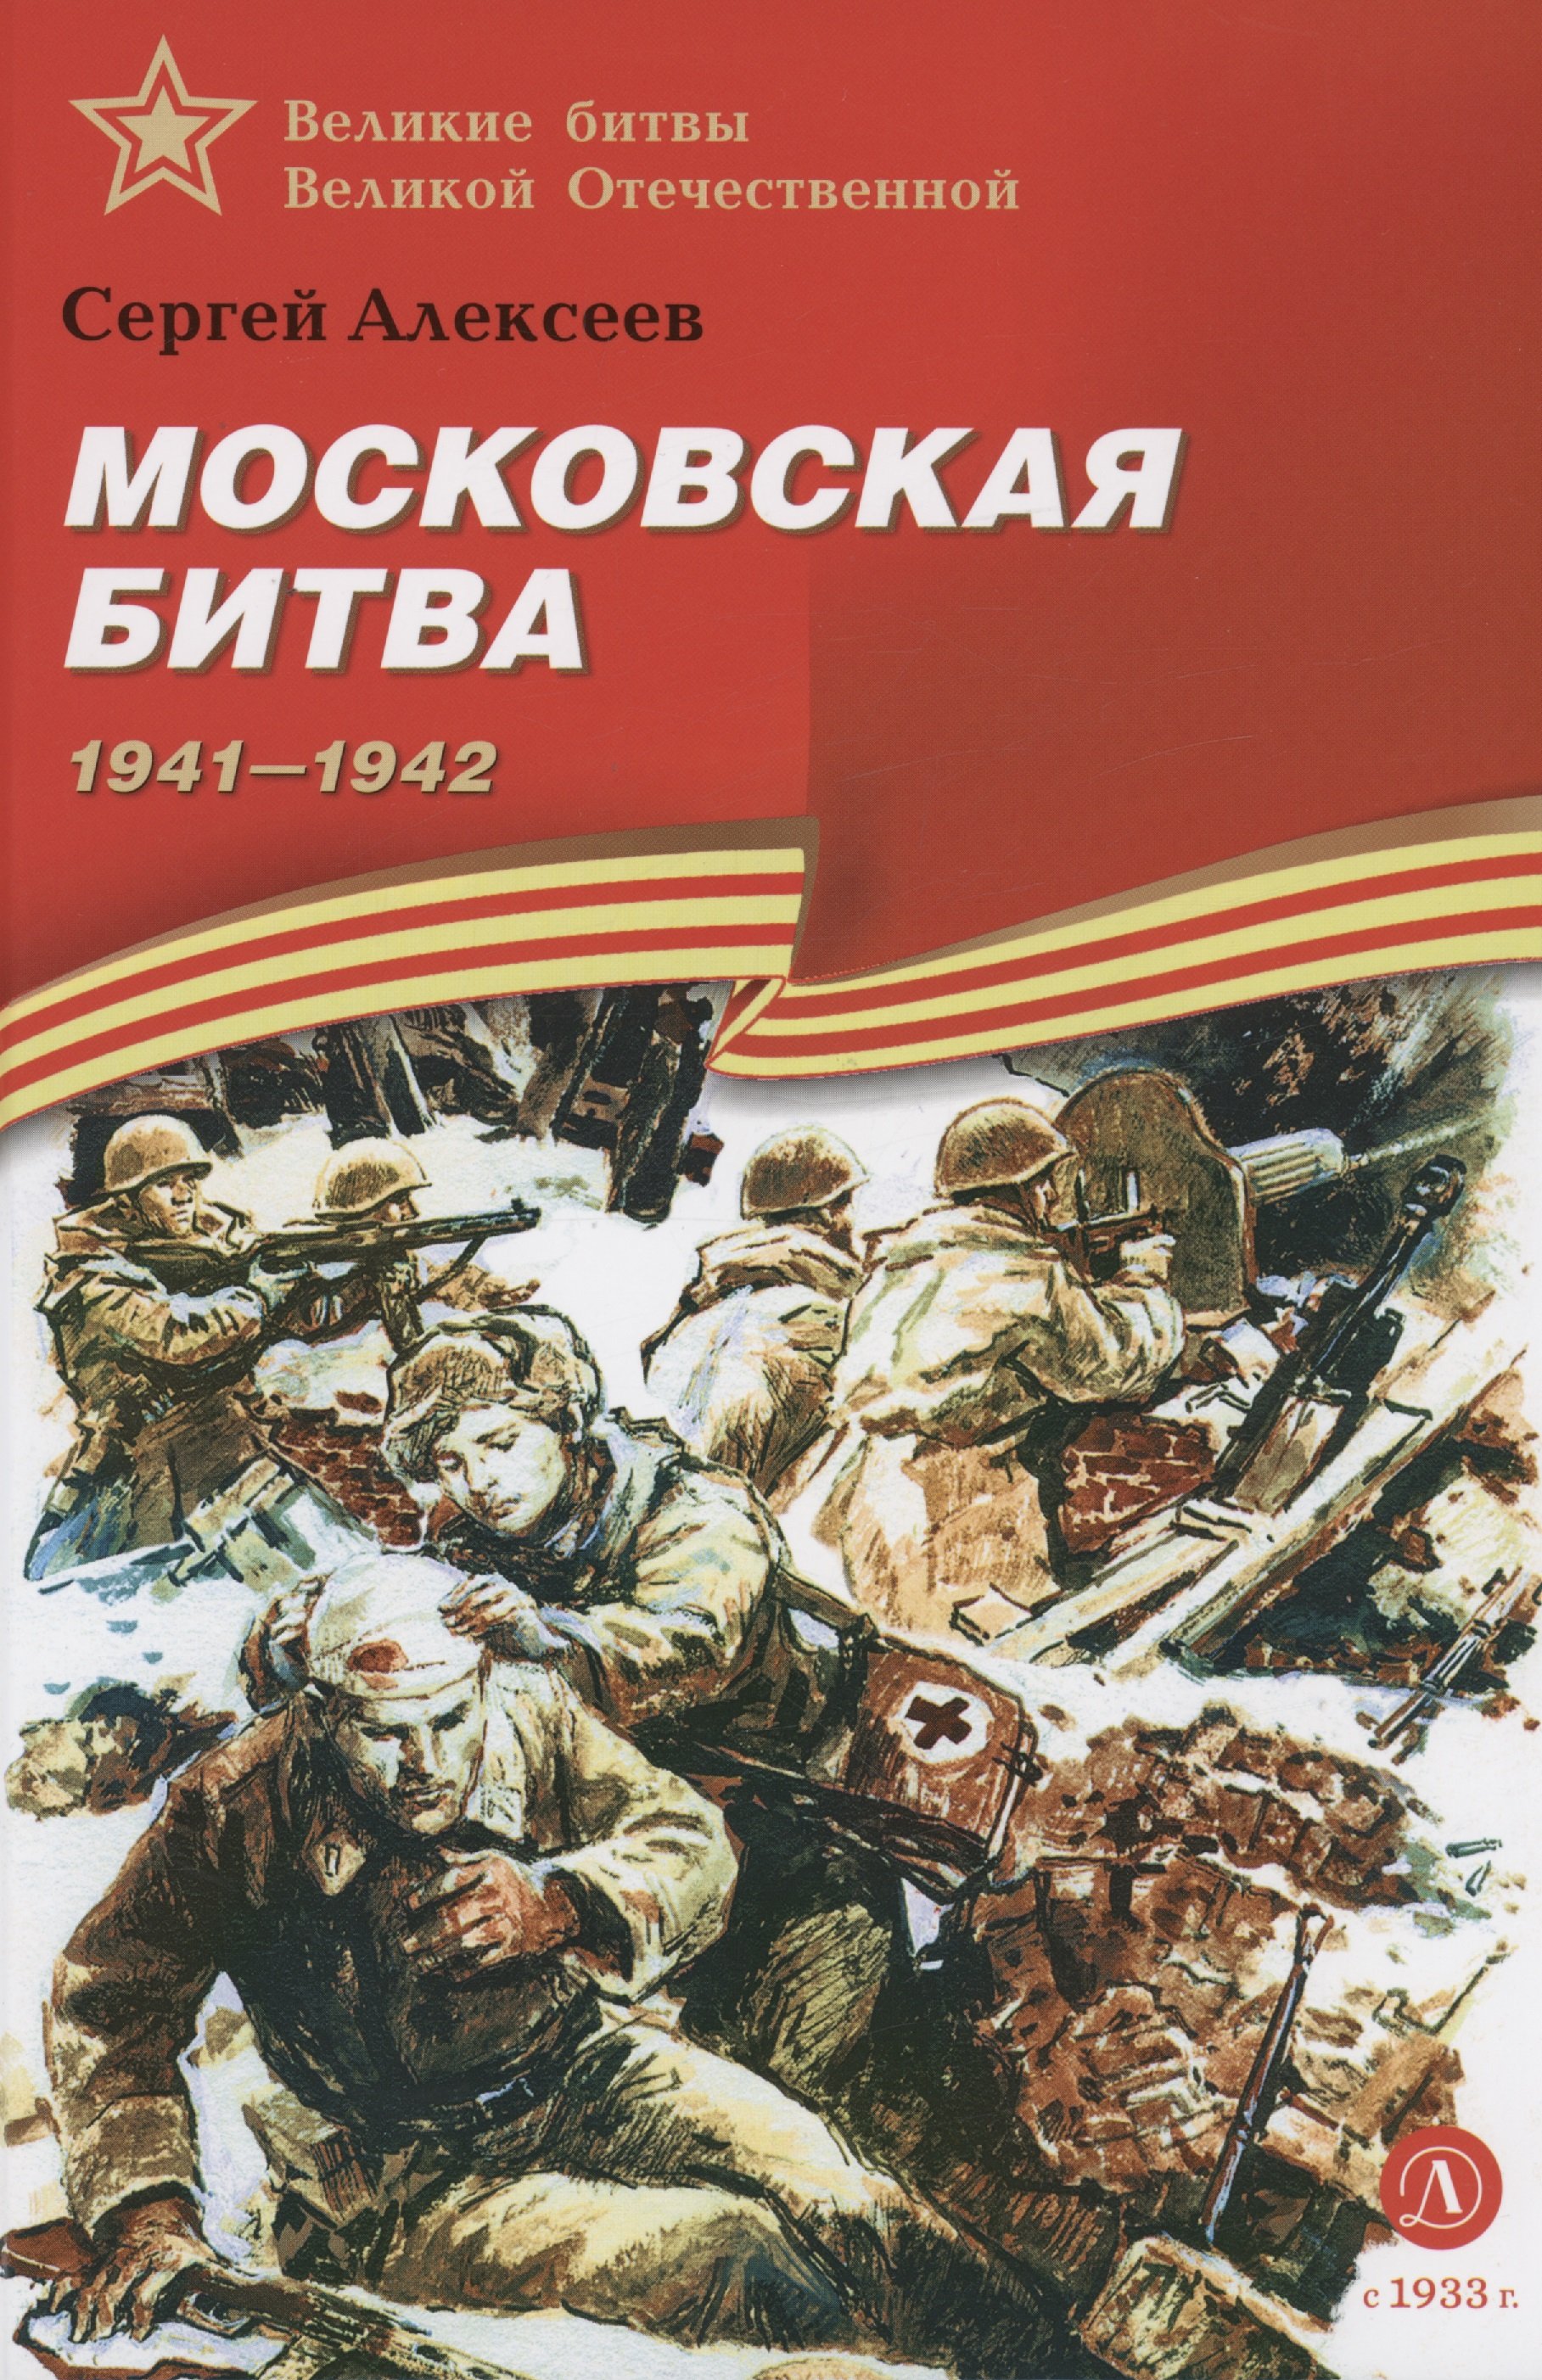 Книги про битвы. Книга с.Алексеева Московская битва.